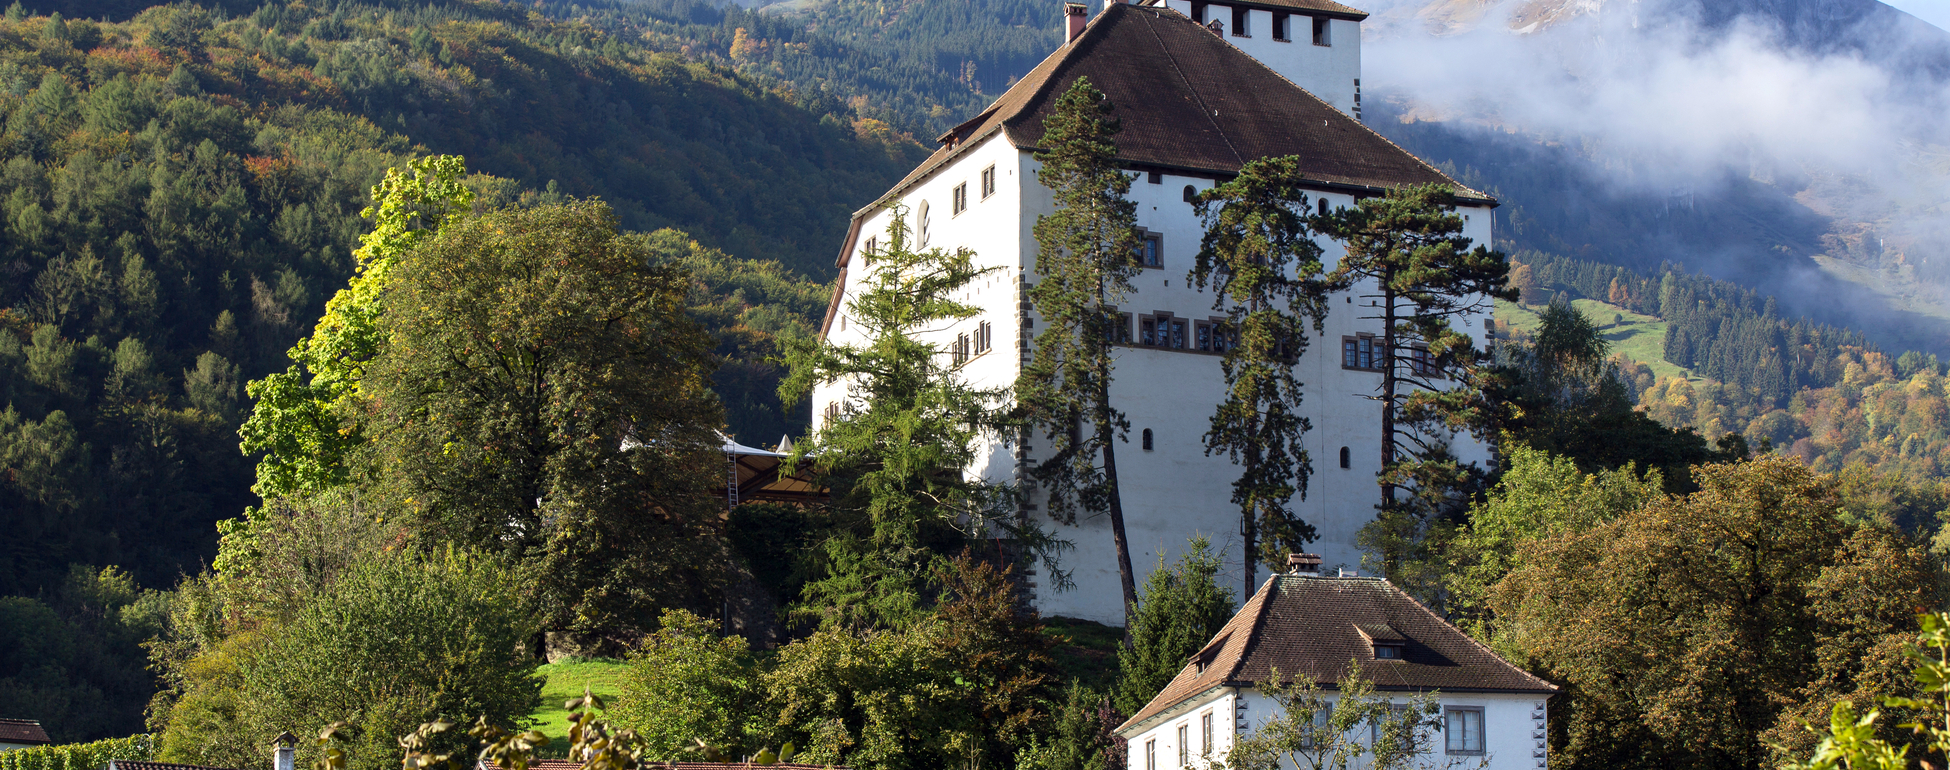 Werdenberg Castle